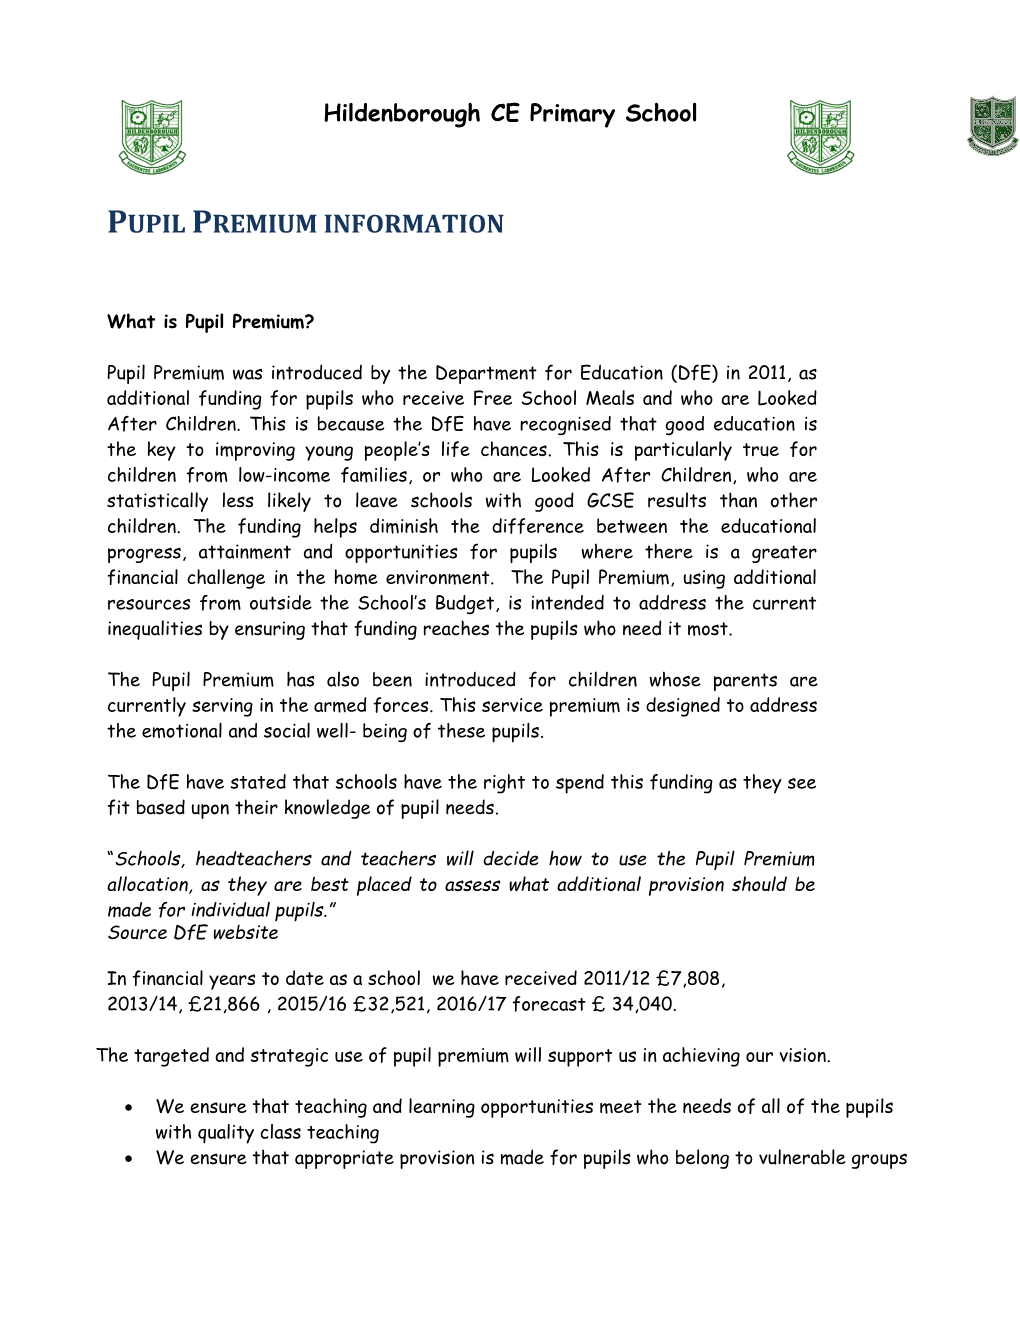 Pupil Premium Information